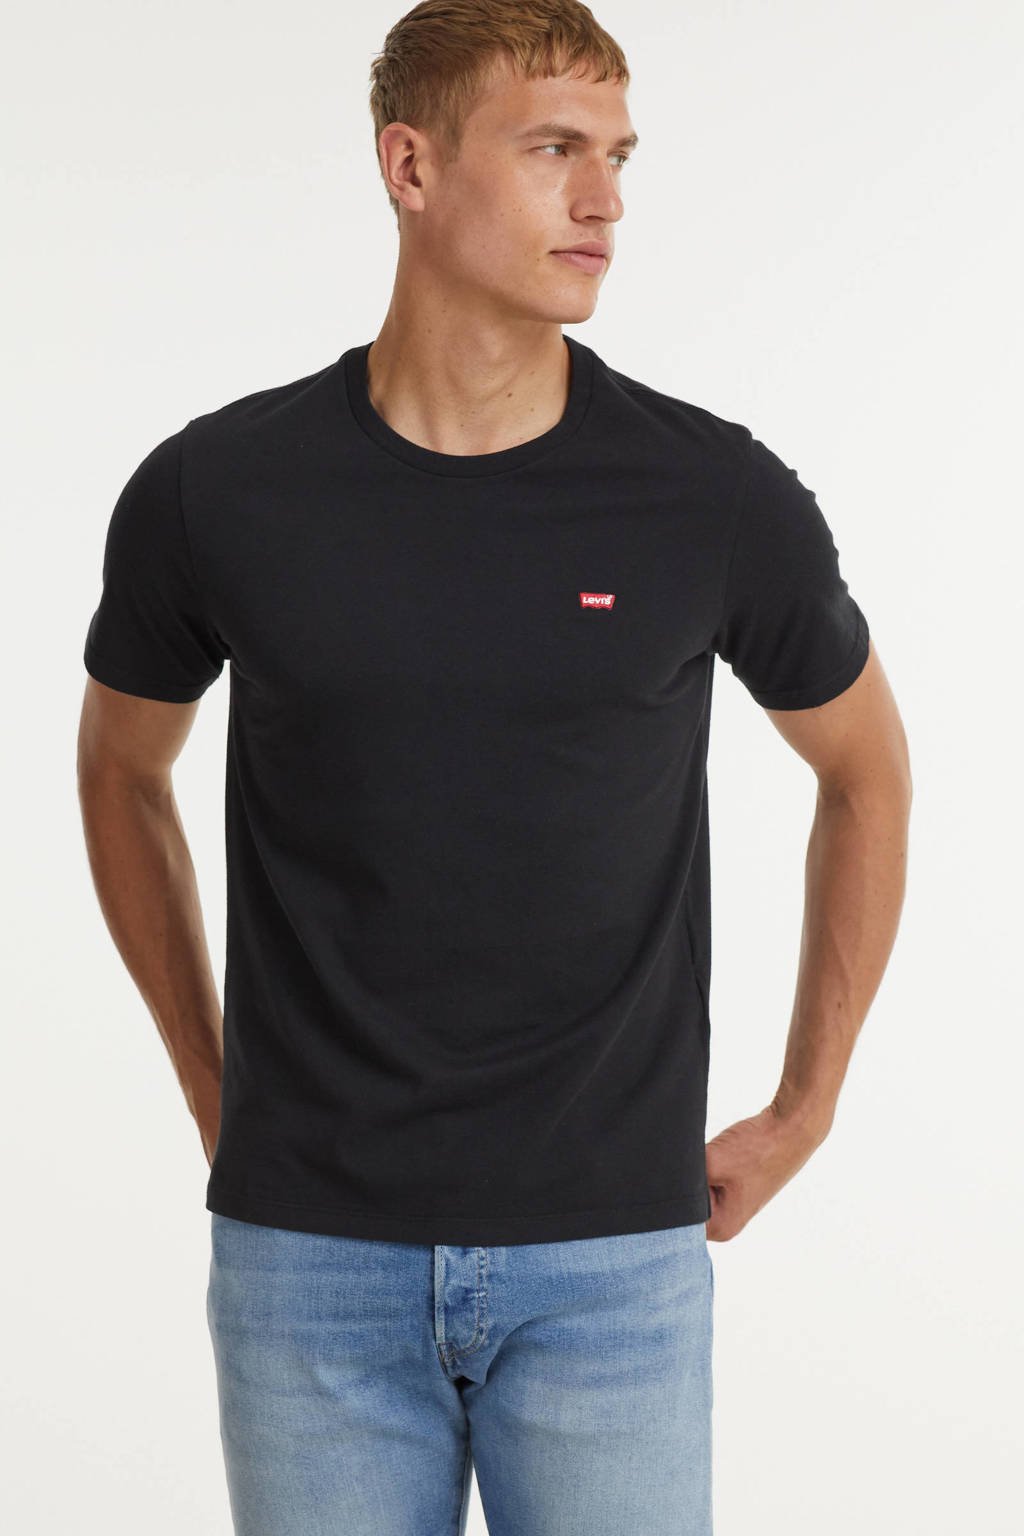 Eenzaamheid subtiel schroef Levi's basic T-shirt zwart | wehkamp